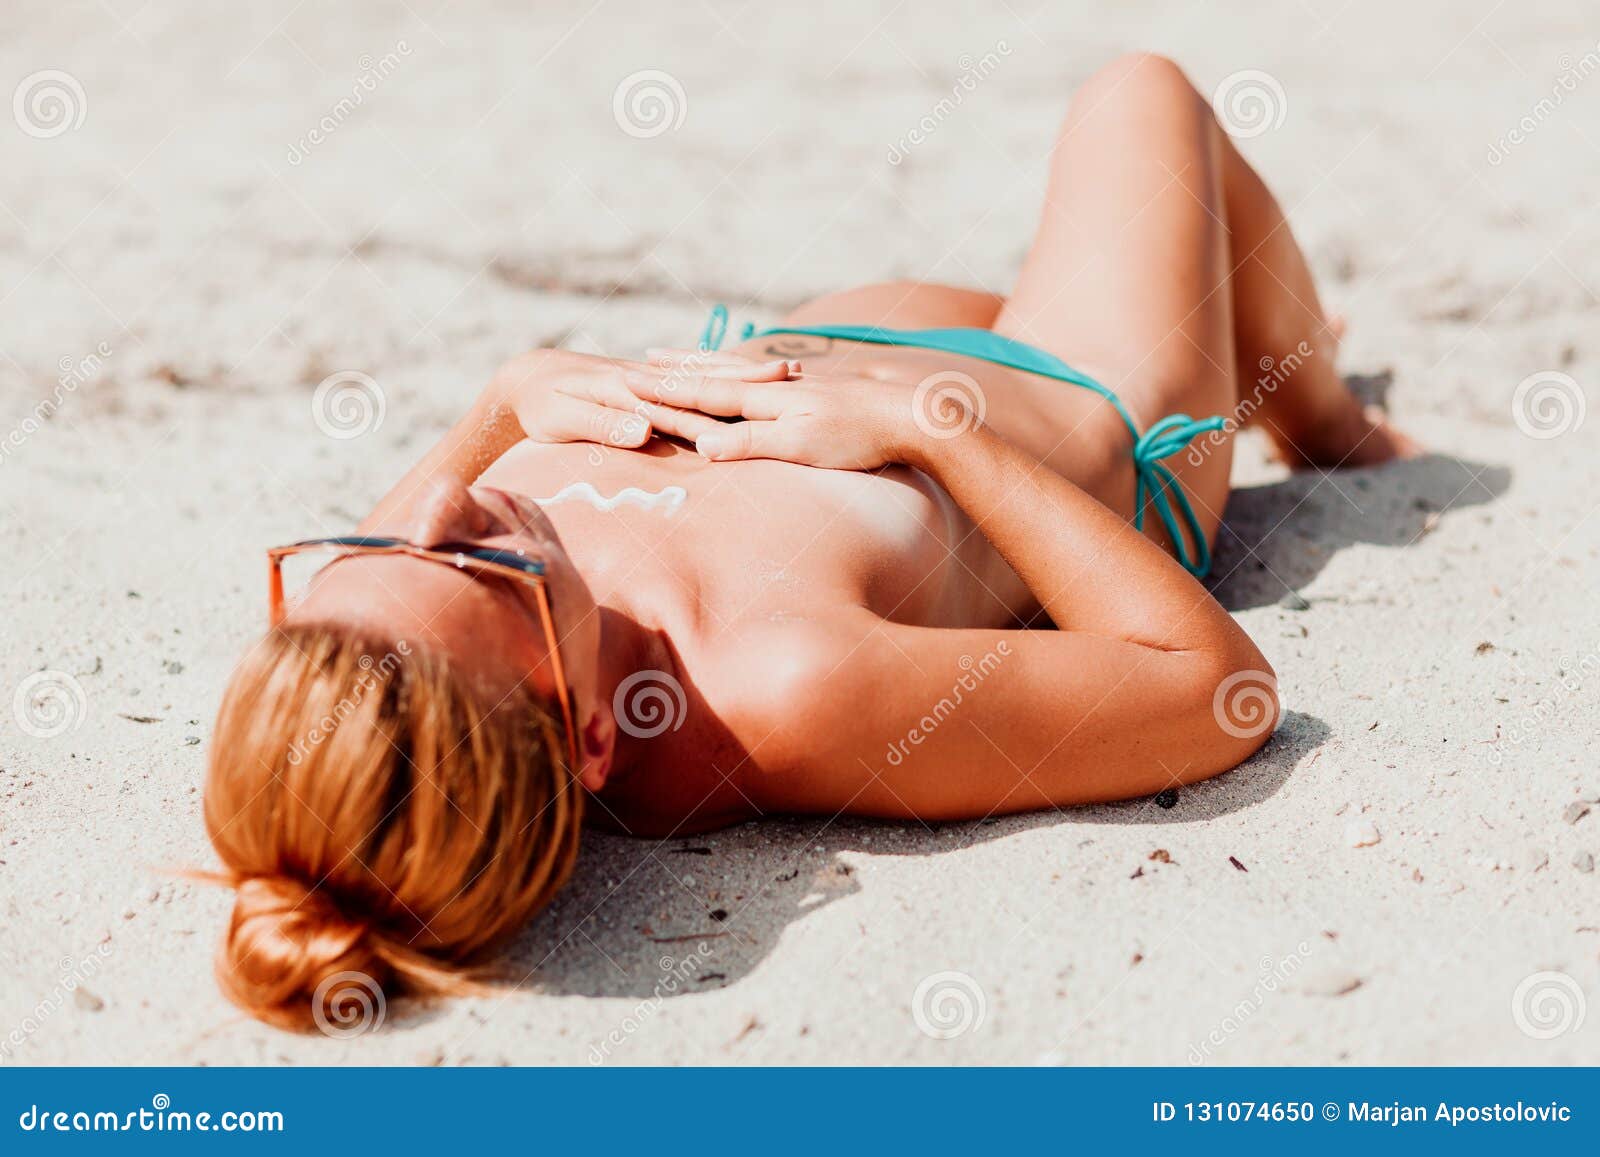 Naked Public Sunbathing